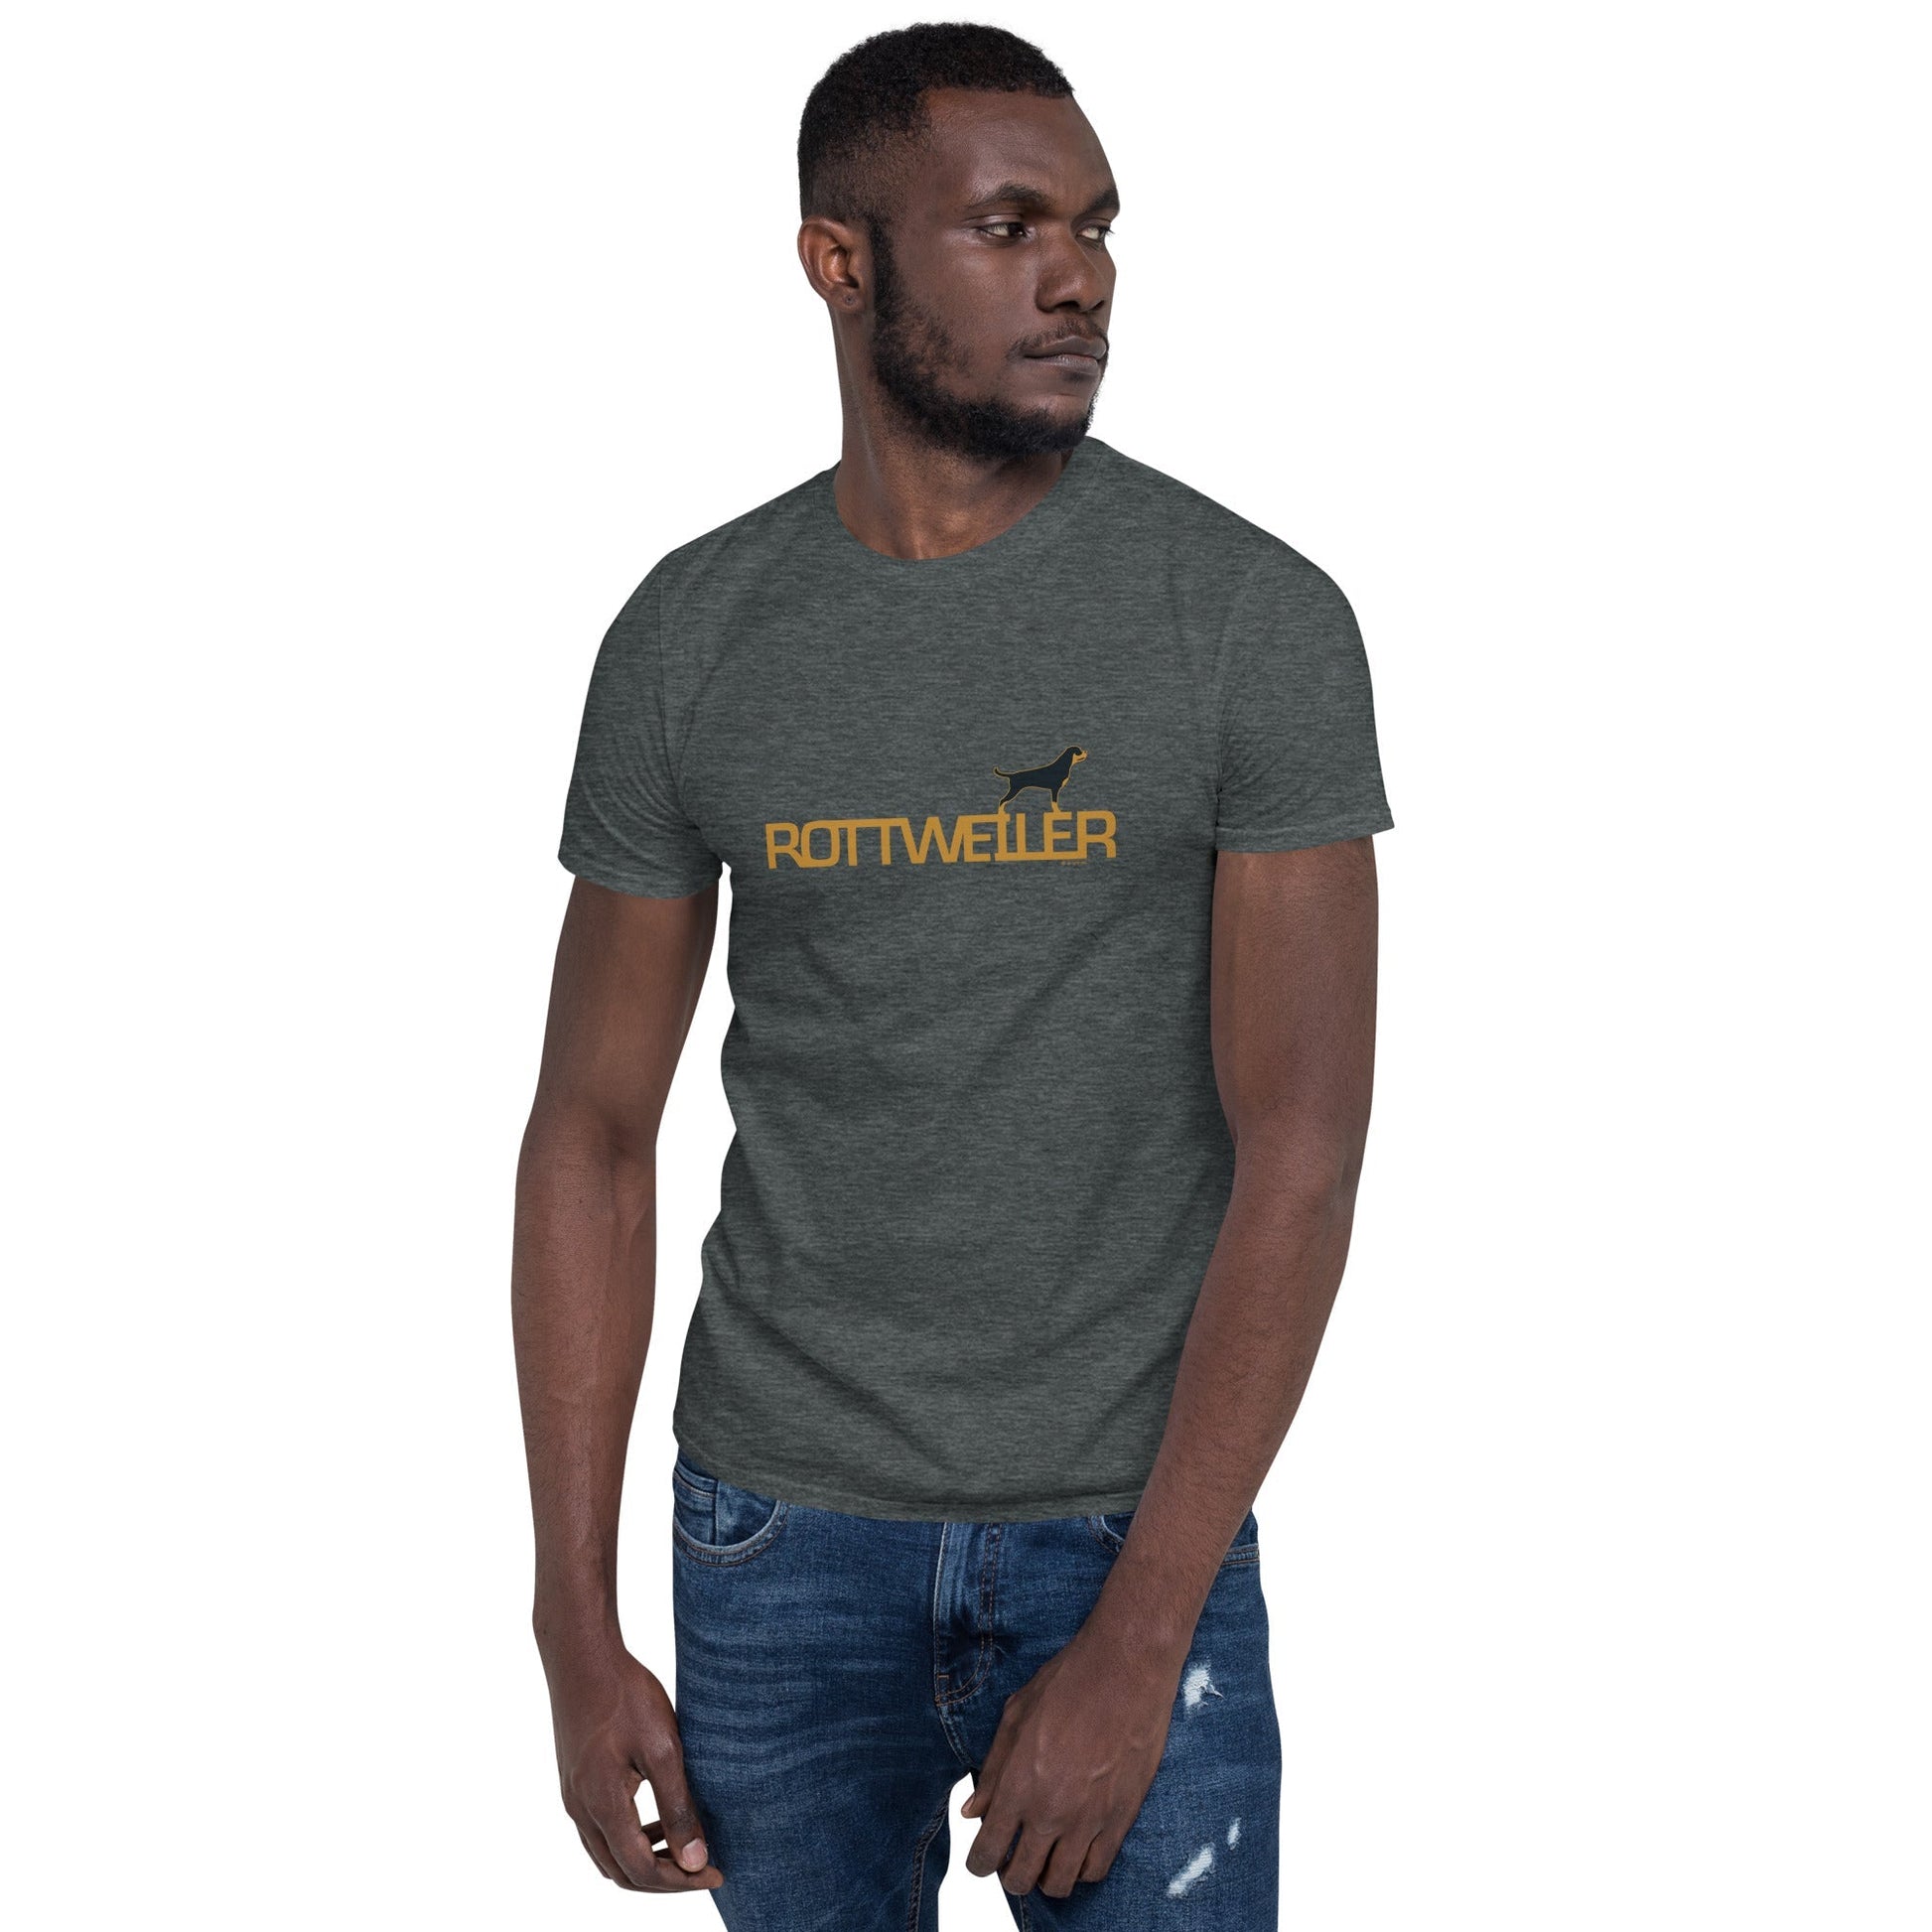 Camiseta unissex com mangas curtas - Rottweiler i-animals